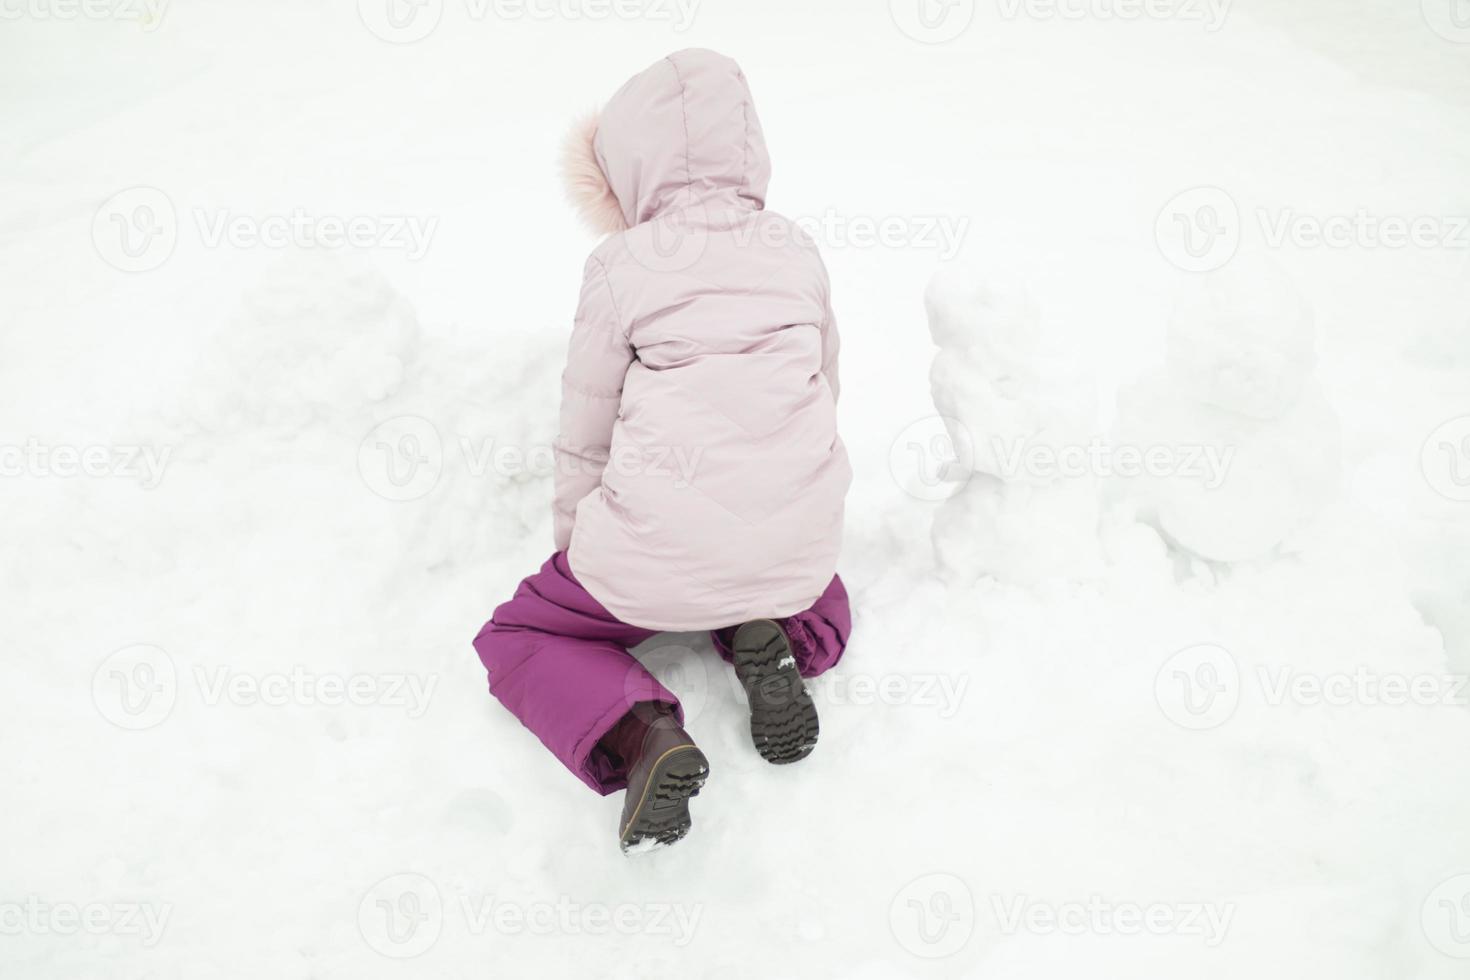 l'enfant joue dans la neige. fille en hiver. vêtements chauds sur l'enfant. photo